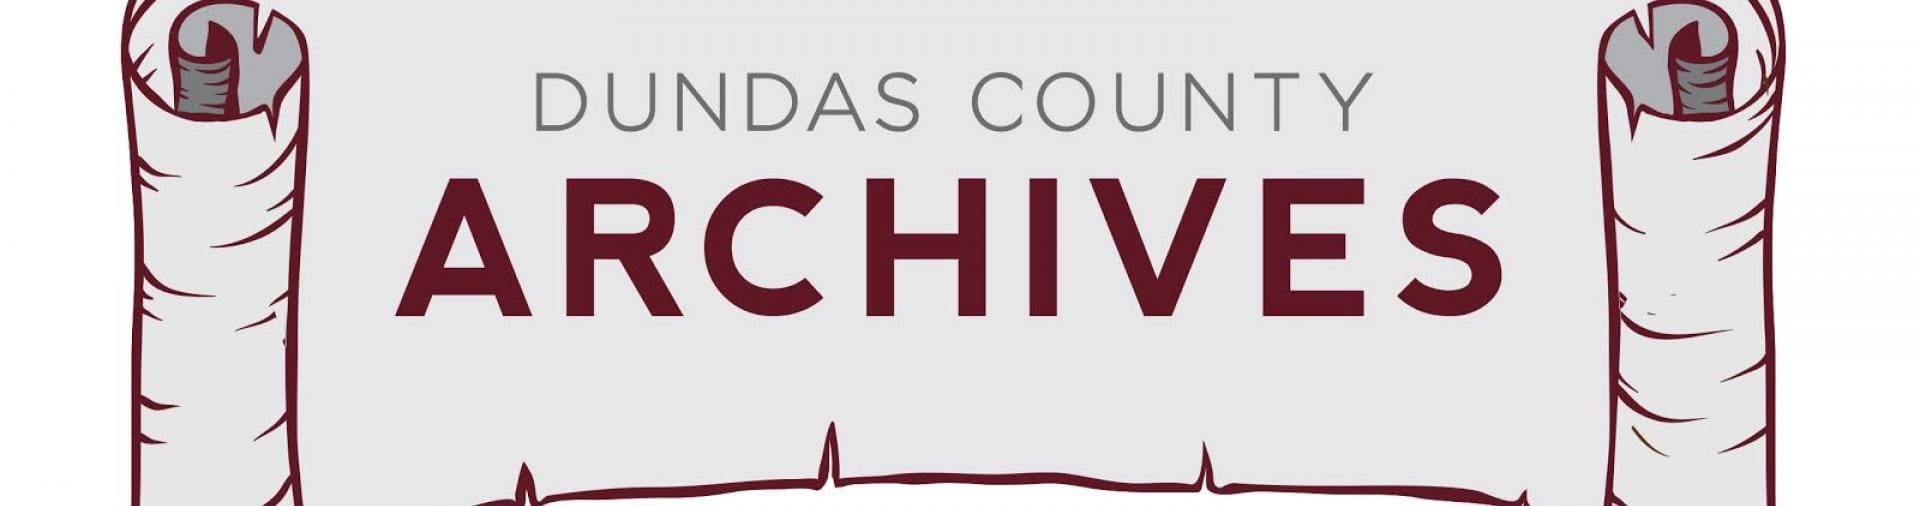 dundas county archives logo